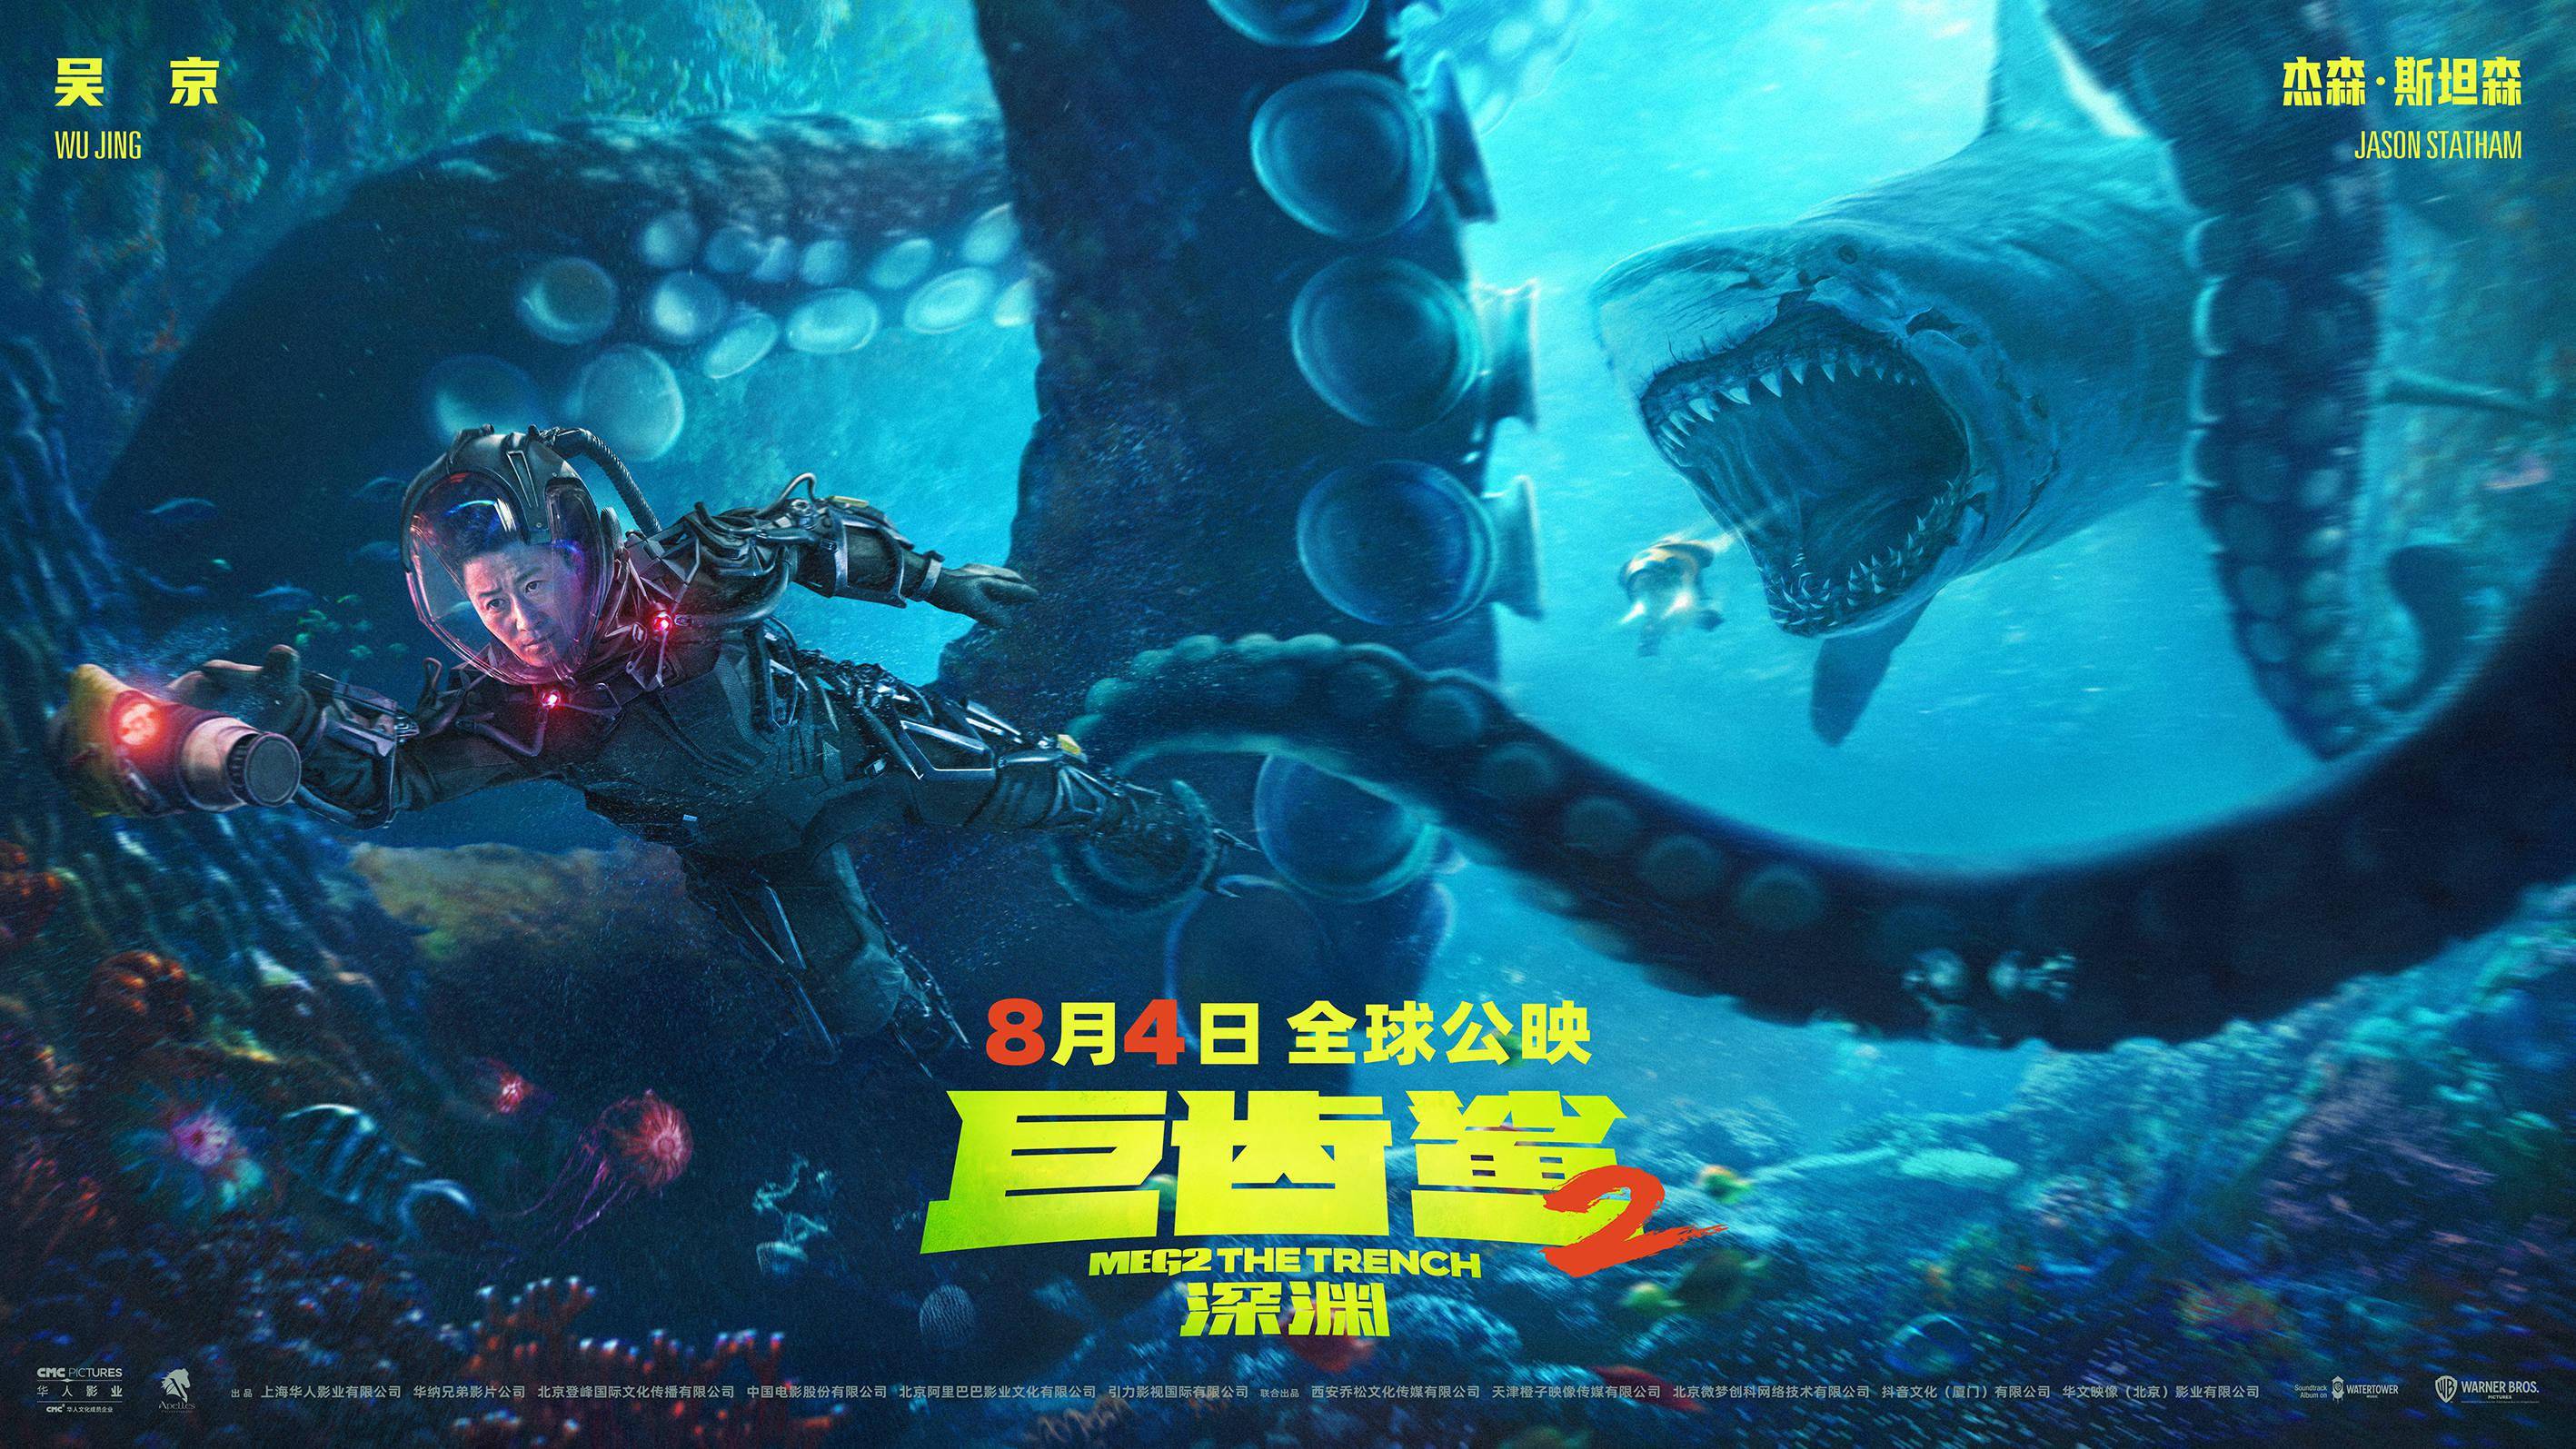 中国主控首部深海怪兽大片《巨齿鲨2:深渊》天津路演 吴京向世界展现